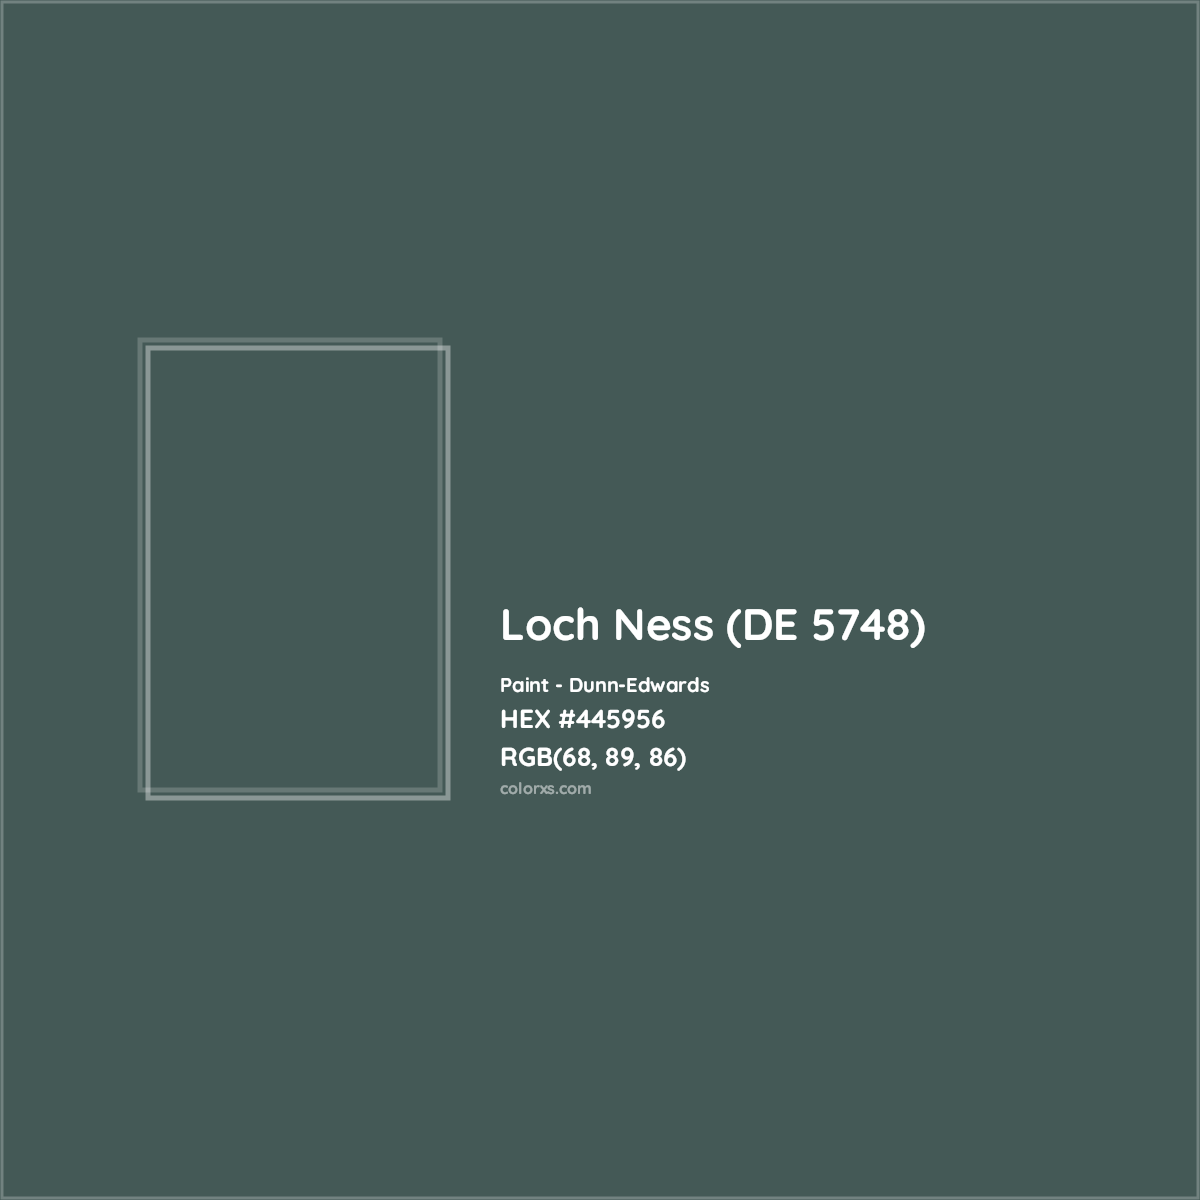 HEX #445956 Loch Ness (DE 5748) Paint Dunn-Edwards - Color Code